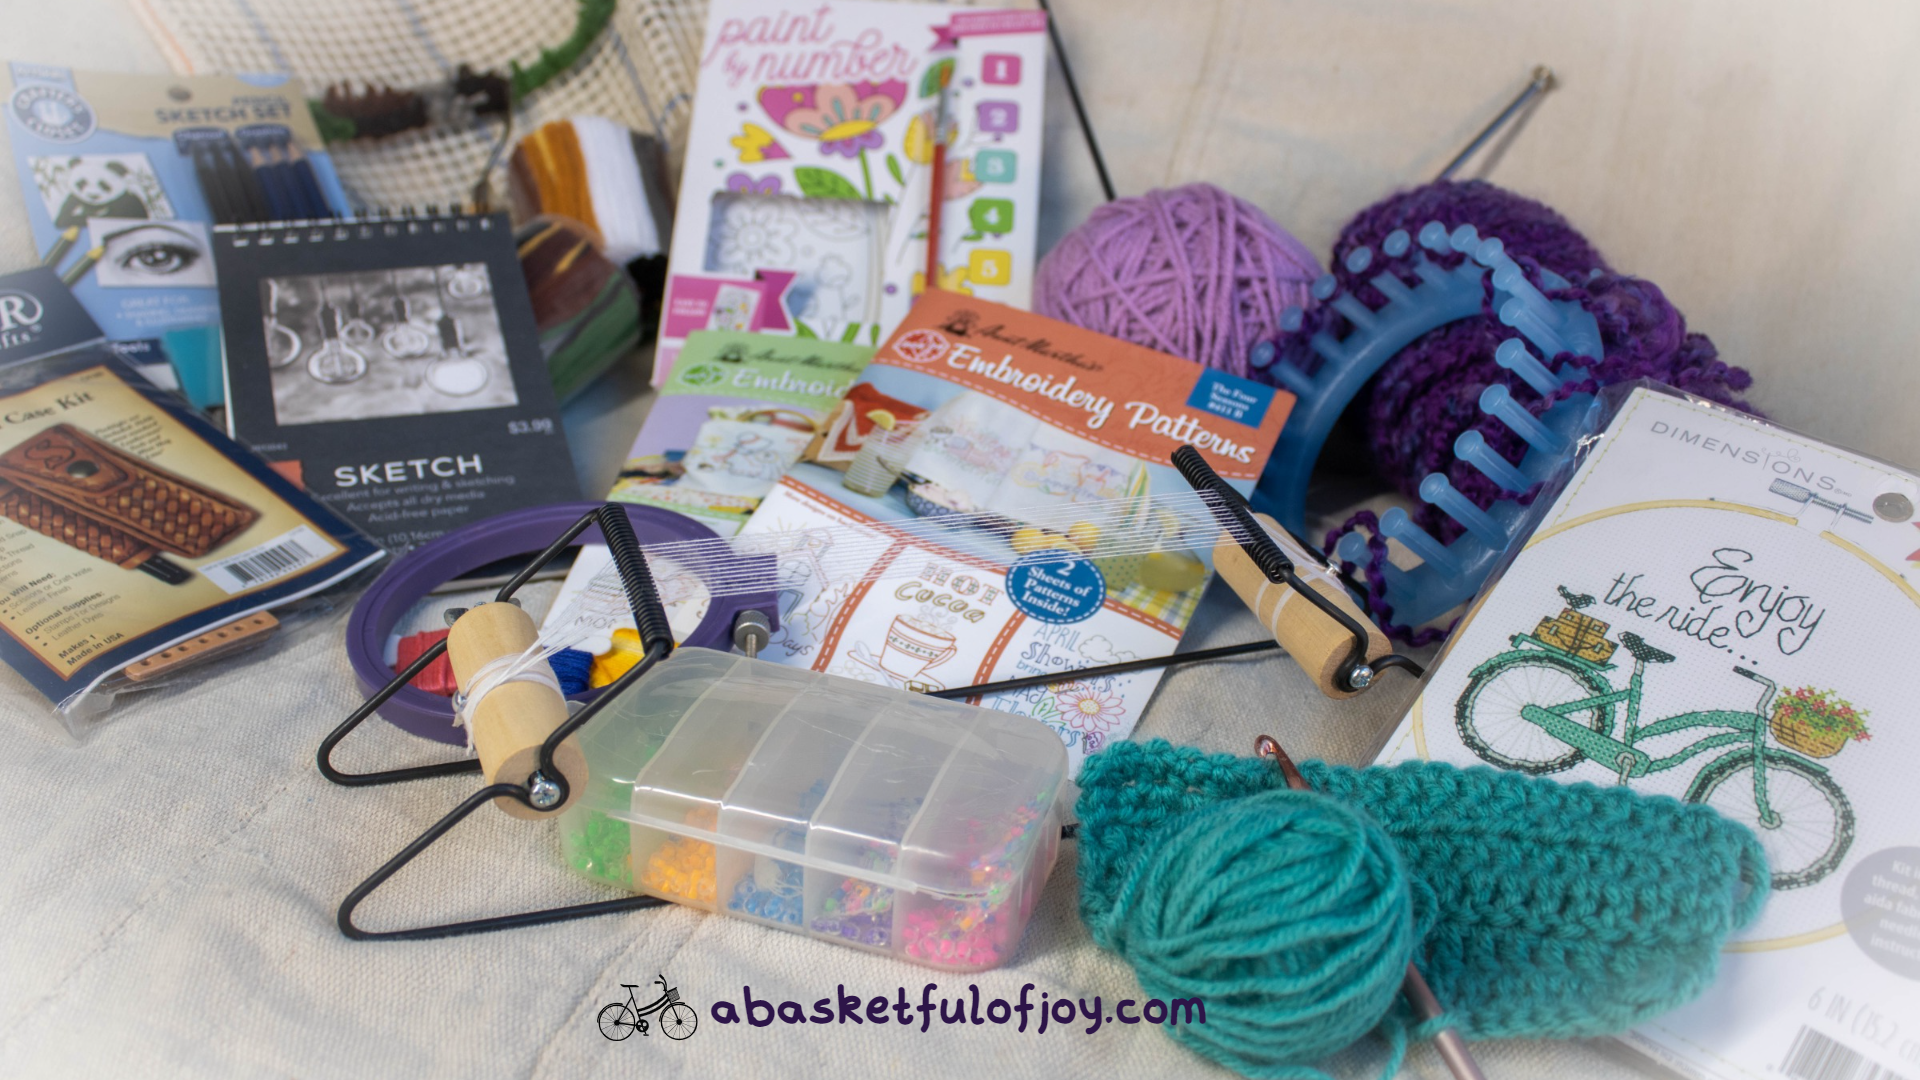 Four Seasons Crafting Kids Sewing Kit and Animal Crafts - Fun DIY